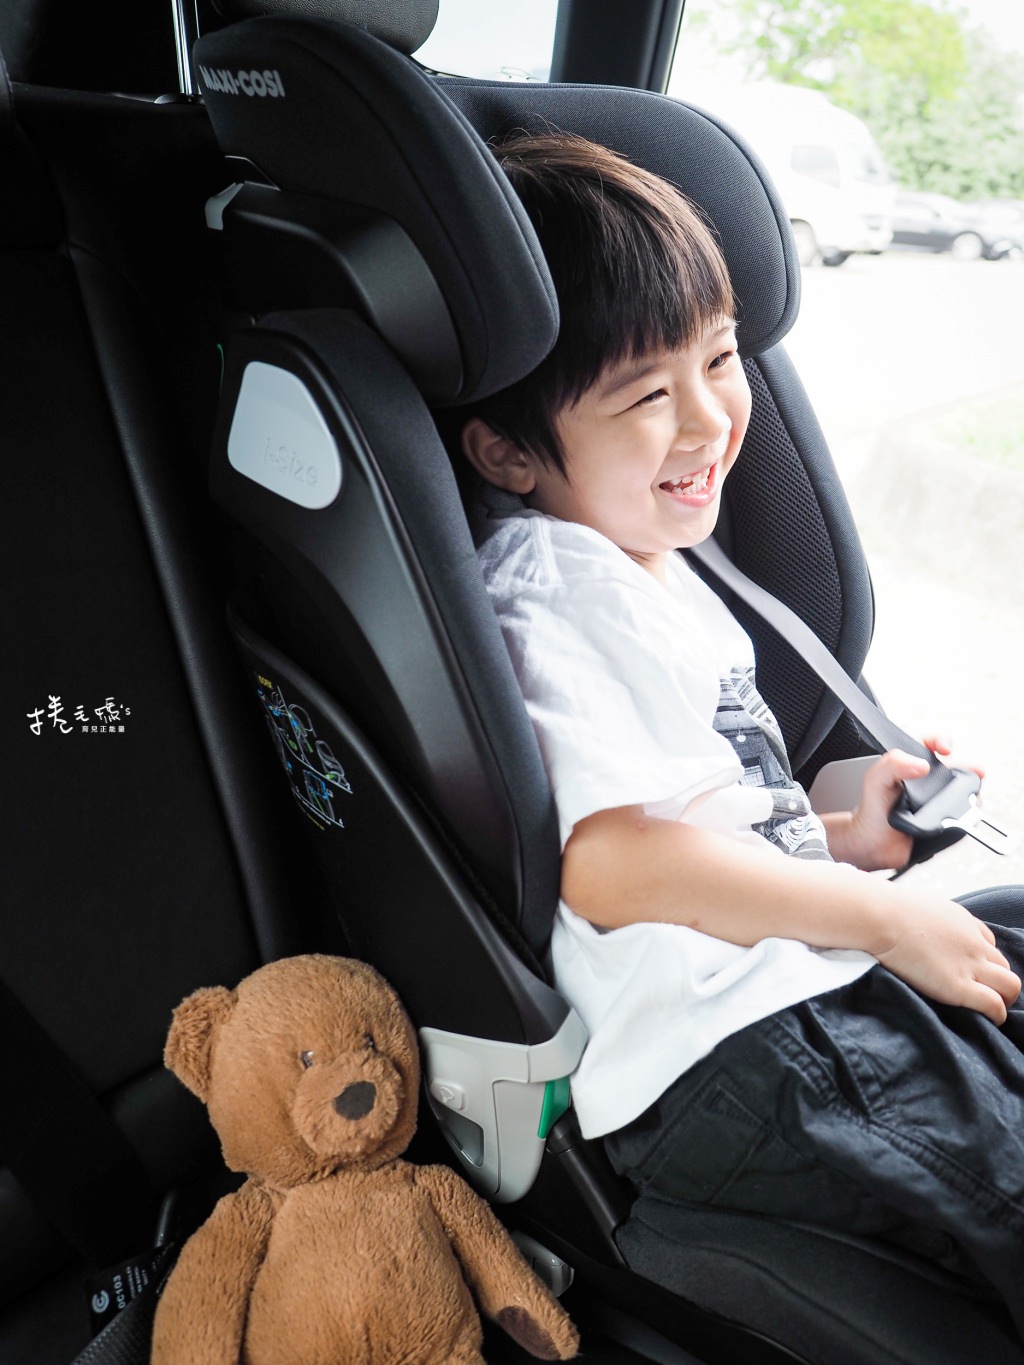 汽座推薦 成長型汽座 安全座椅 兒童安全座椅 汽車安全座椅 maxi cosi chicco 汽座怎麼挑 0歲可用安全座椅 納尼亞 45 batch